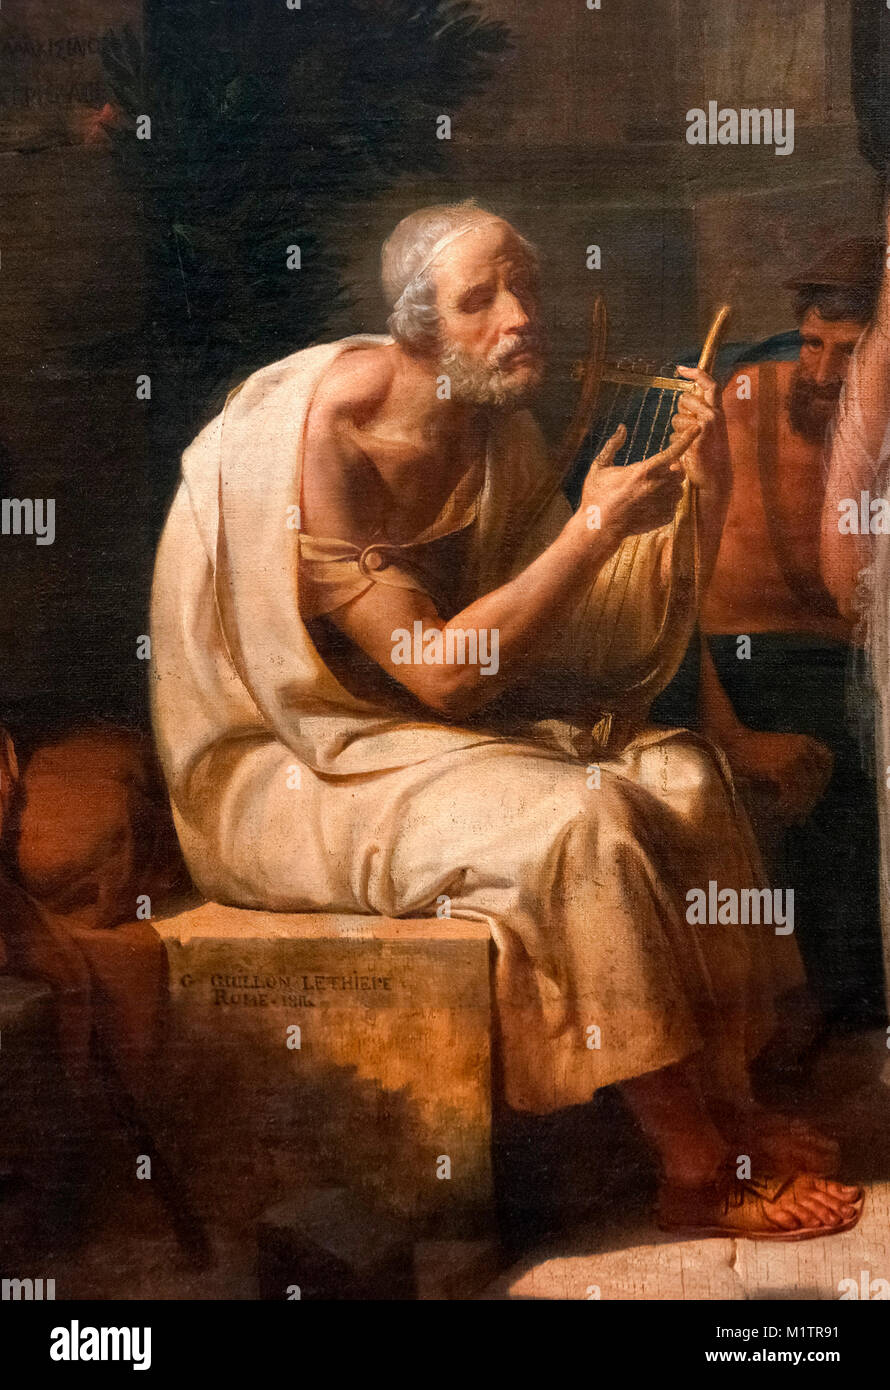 Son chant d'Homère Iliade à l'entrée d'Athènes par Guillaume Lethiere (1760-1832), huile sur toile, 1811. Détail d'une grande peinture, M1TR90. Banque D'Images